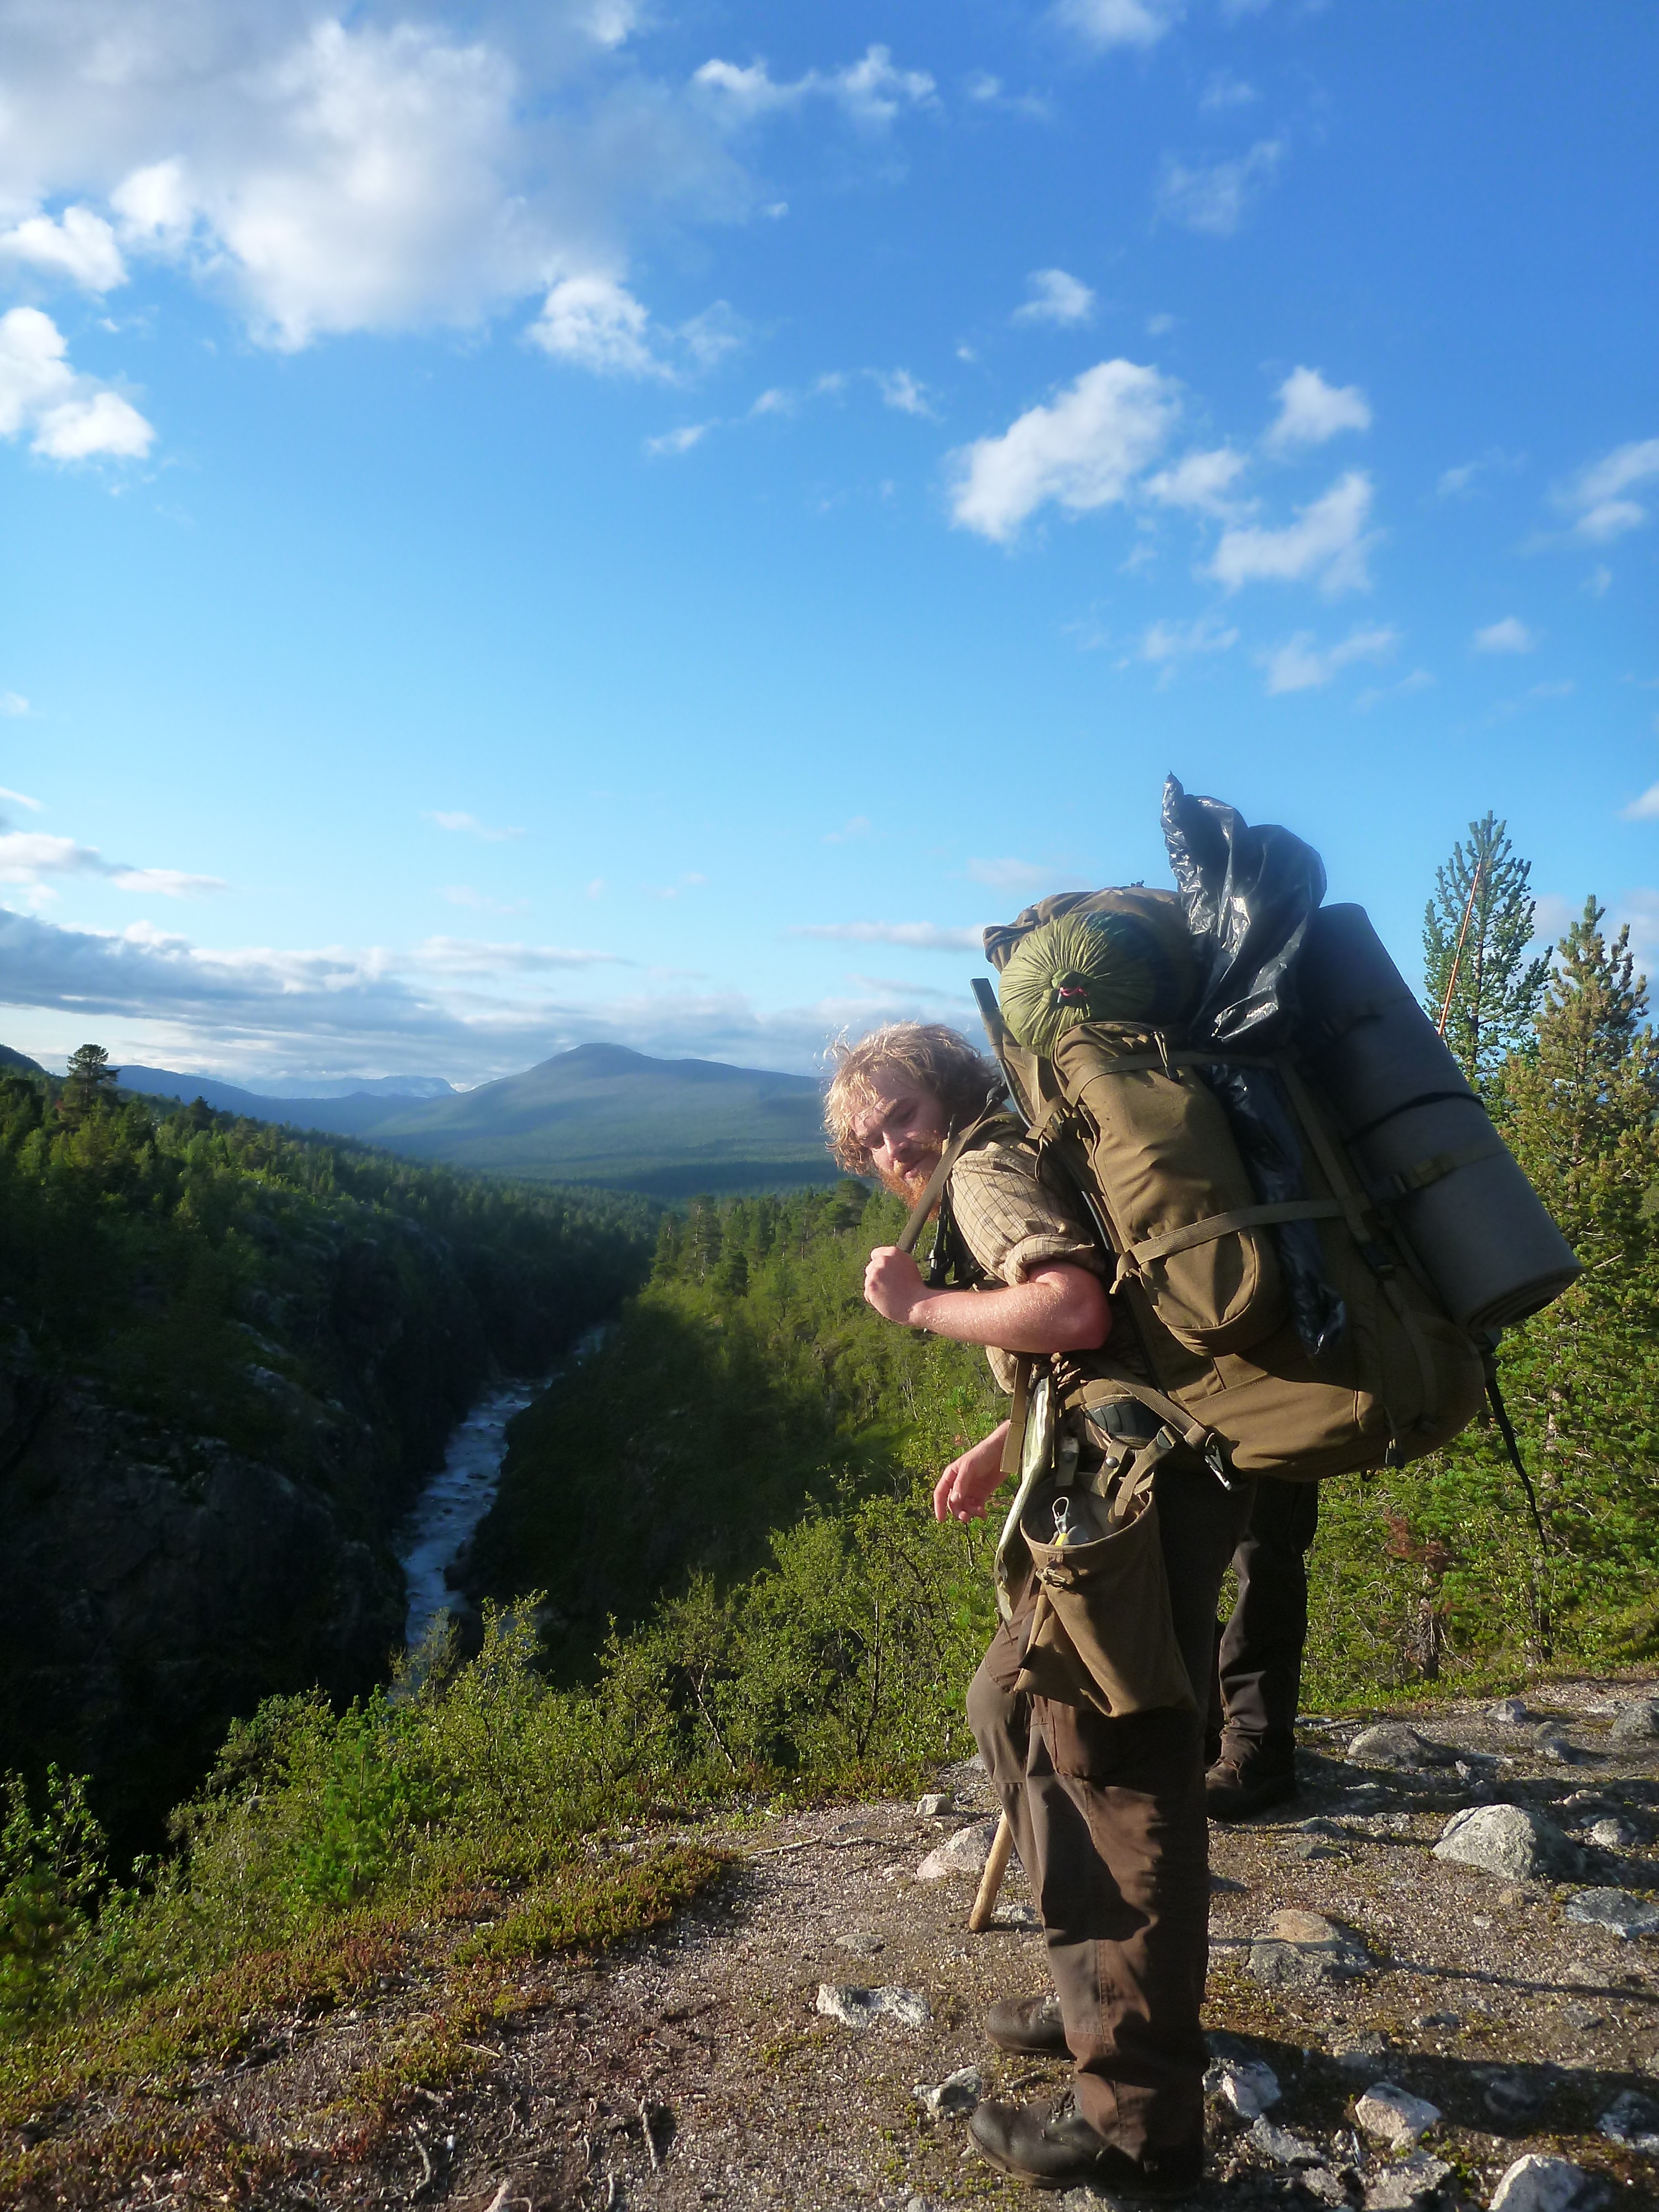 Laissez moi vous présenter Sondre (prononcé "sandré"), un marcheur Norvégien traversant la Norvège du Sud au nord